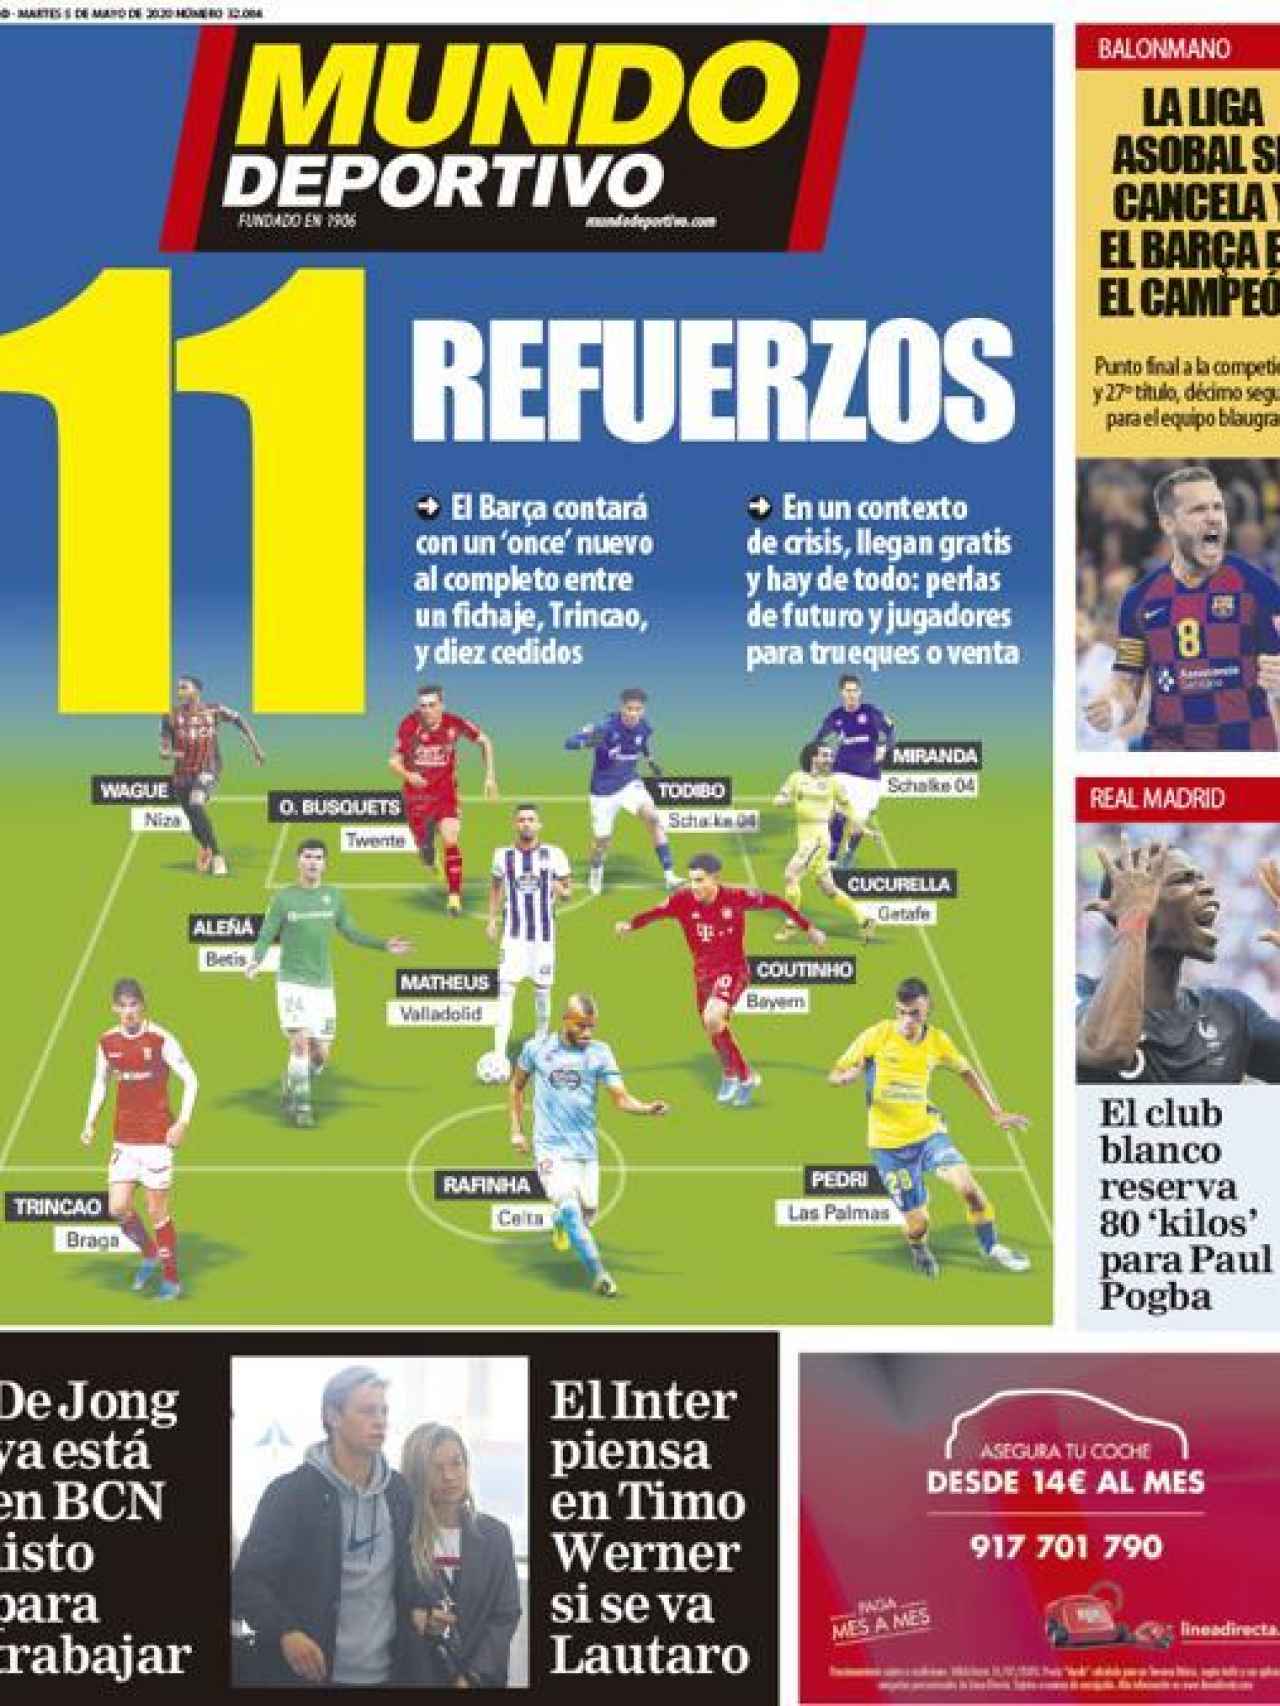 La portada del diario Mundo Deportivo (05/05/2020)